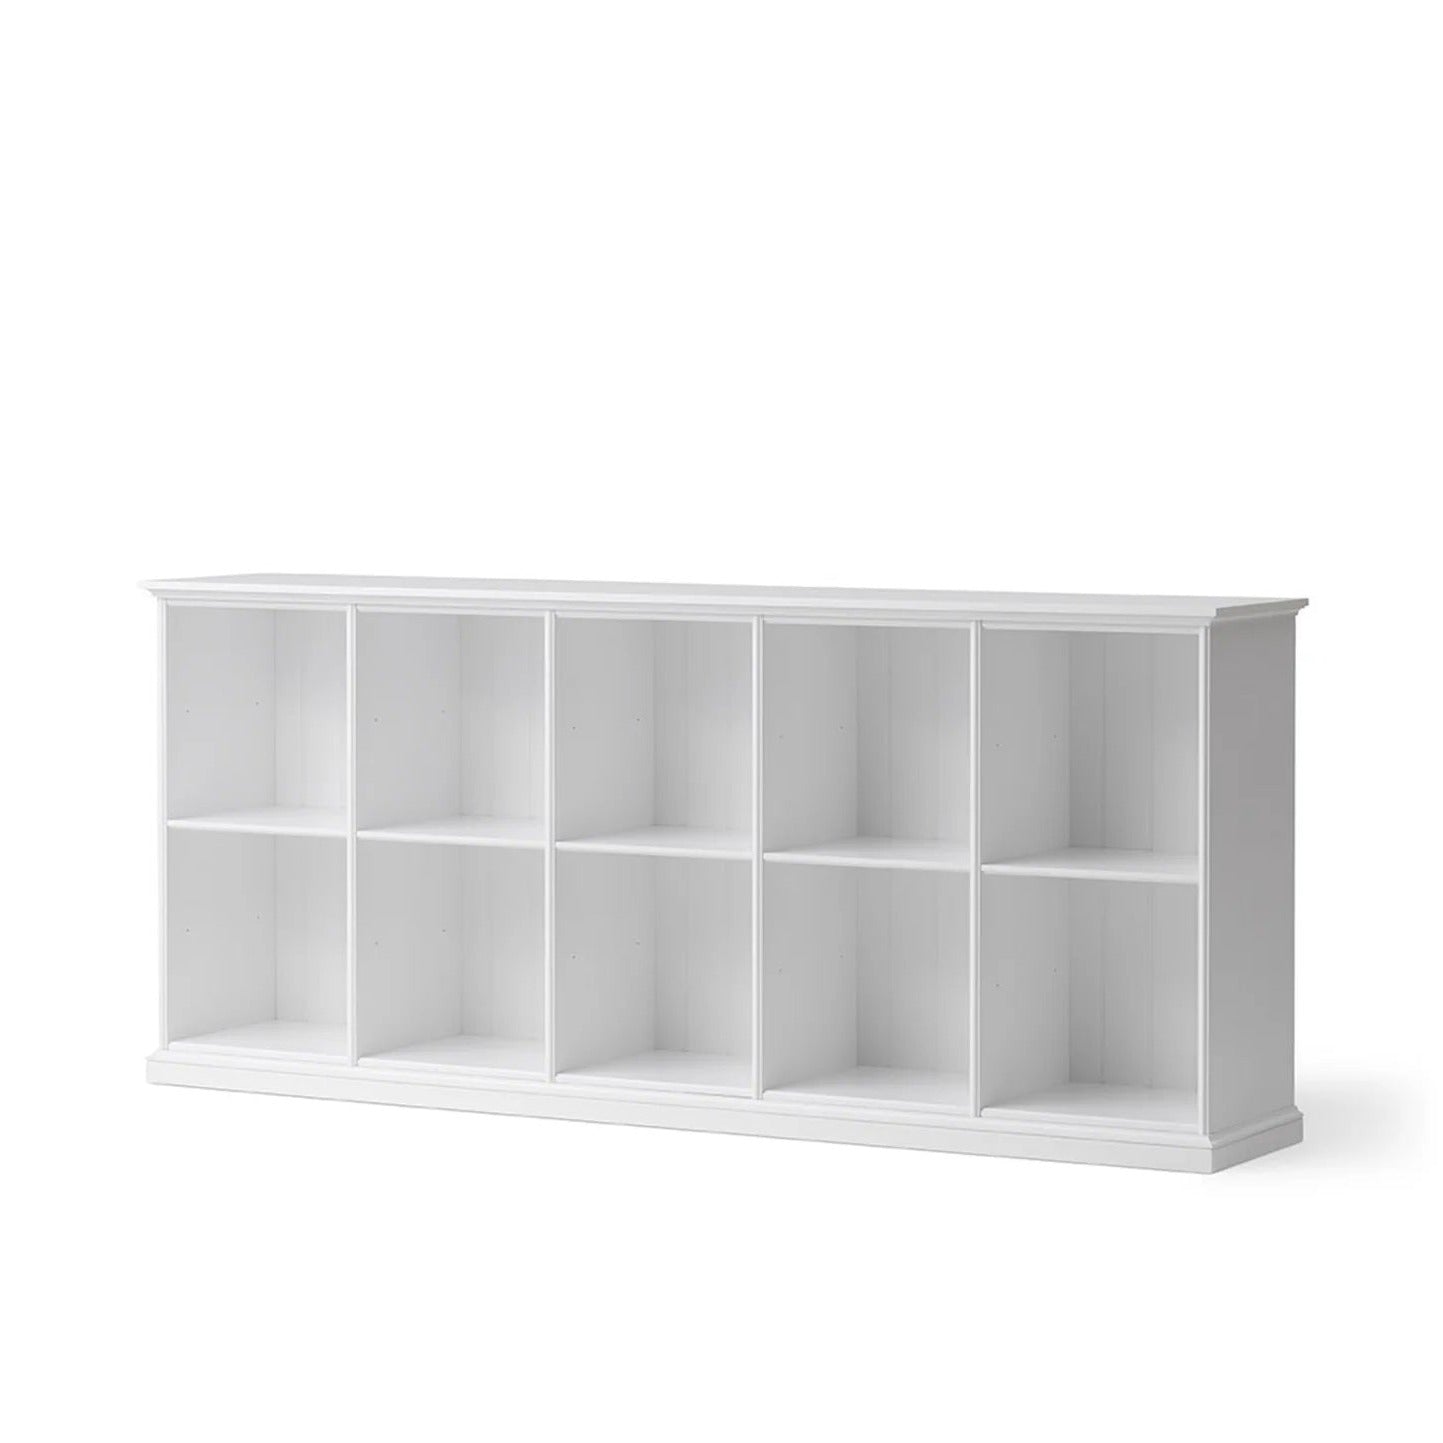 Oliver Furniture Seaside Low Standing Cabinet - 10 Shelves